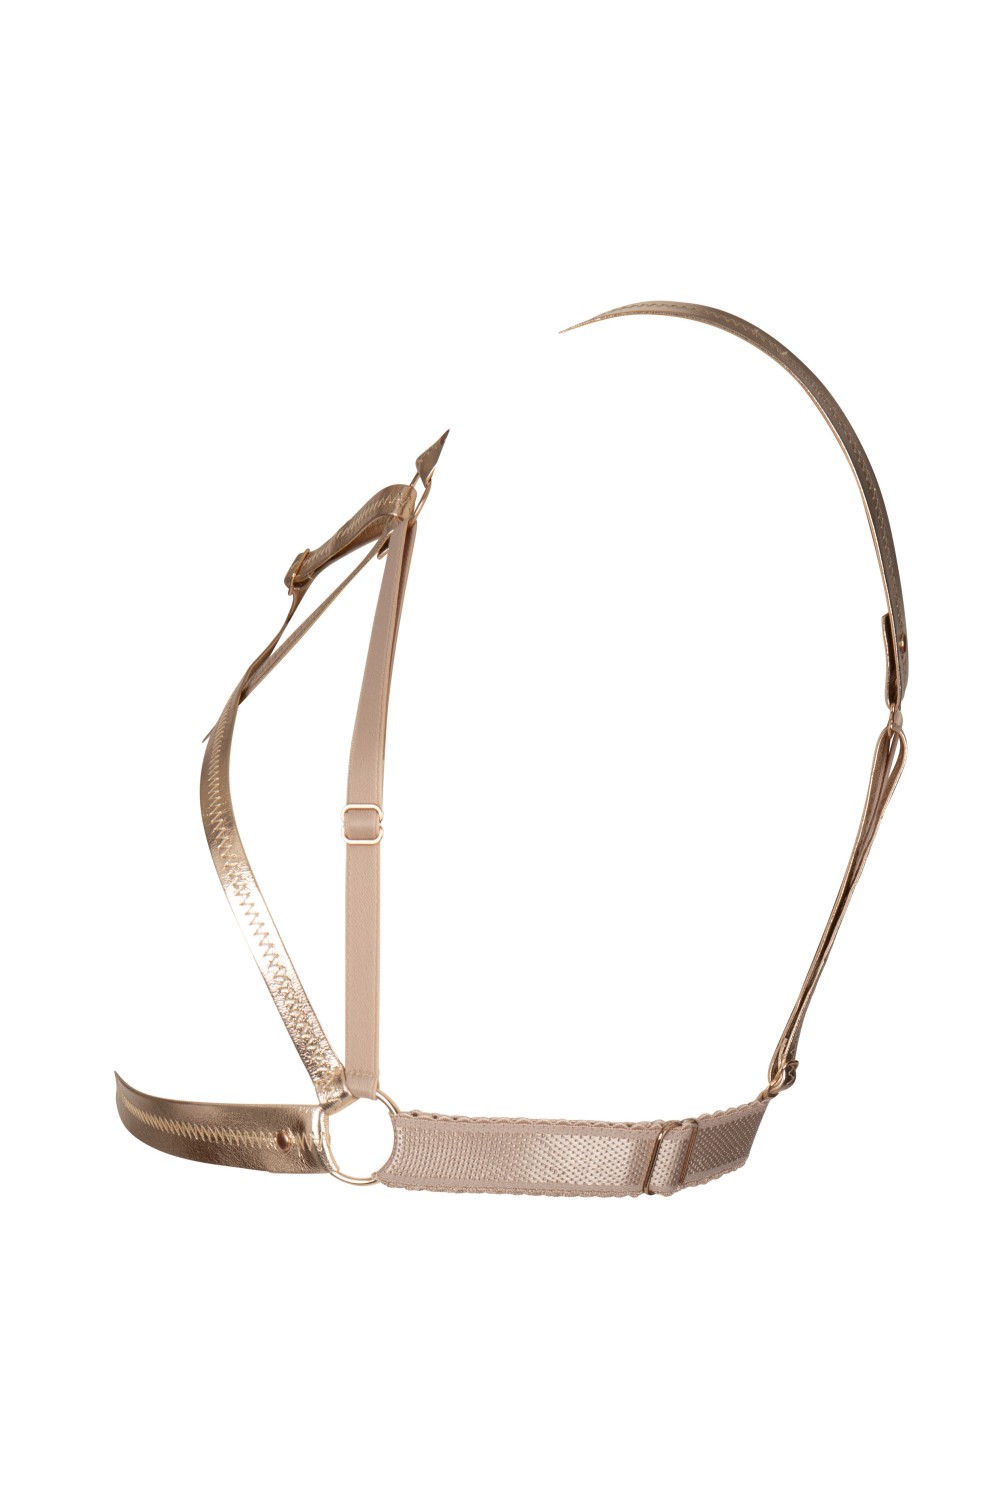 Blair harness - Luxury lingerie – Impudique Official Website